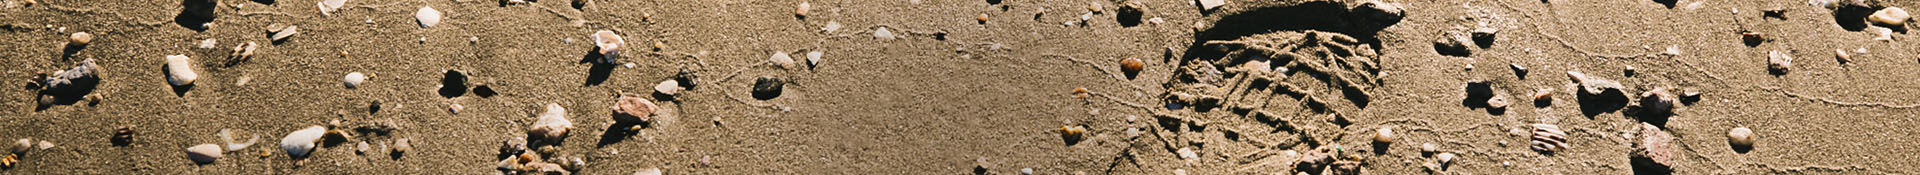 Sandal Print in Sand.